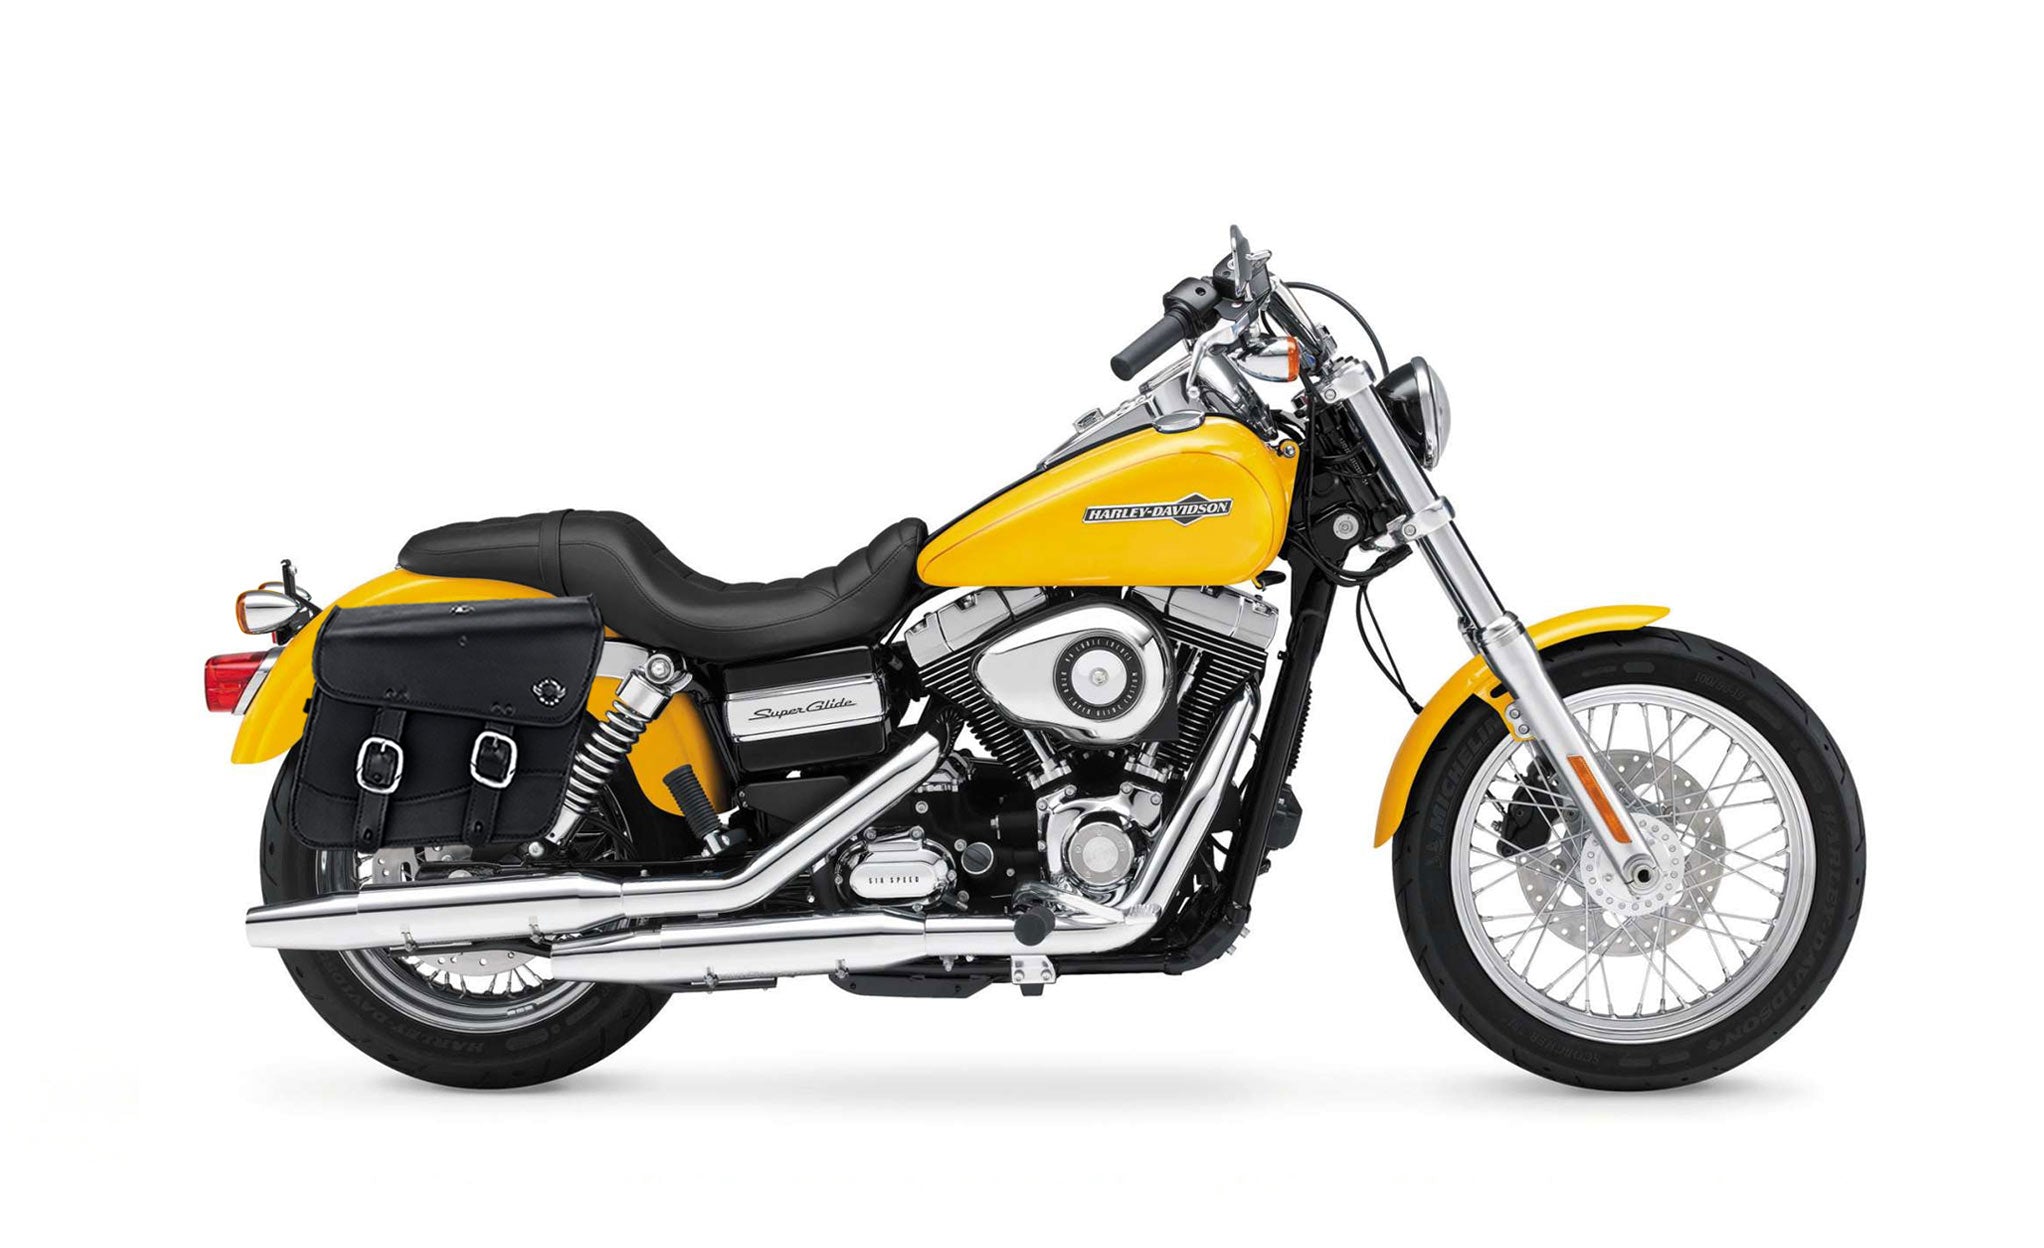 Viking Thor Medium Leather Motorcycle Saddlebags For Harley Davidson Dyna Super Glide Fxd I on Bike Photo @expand